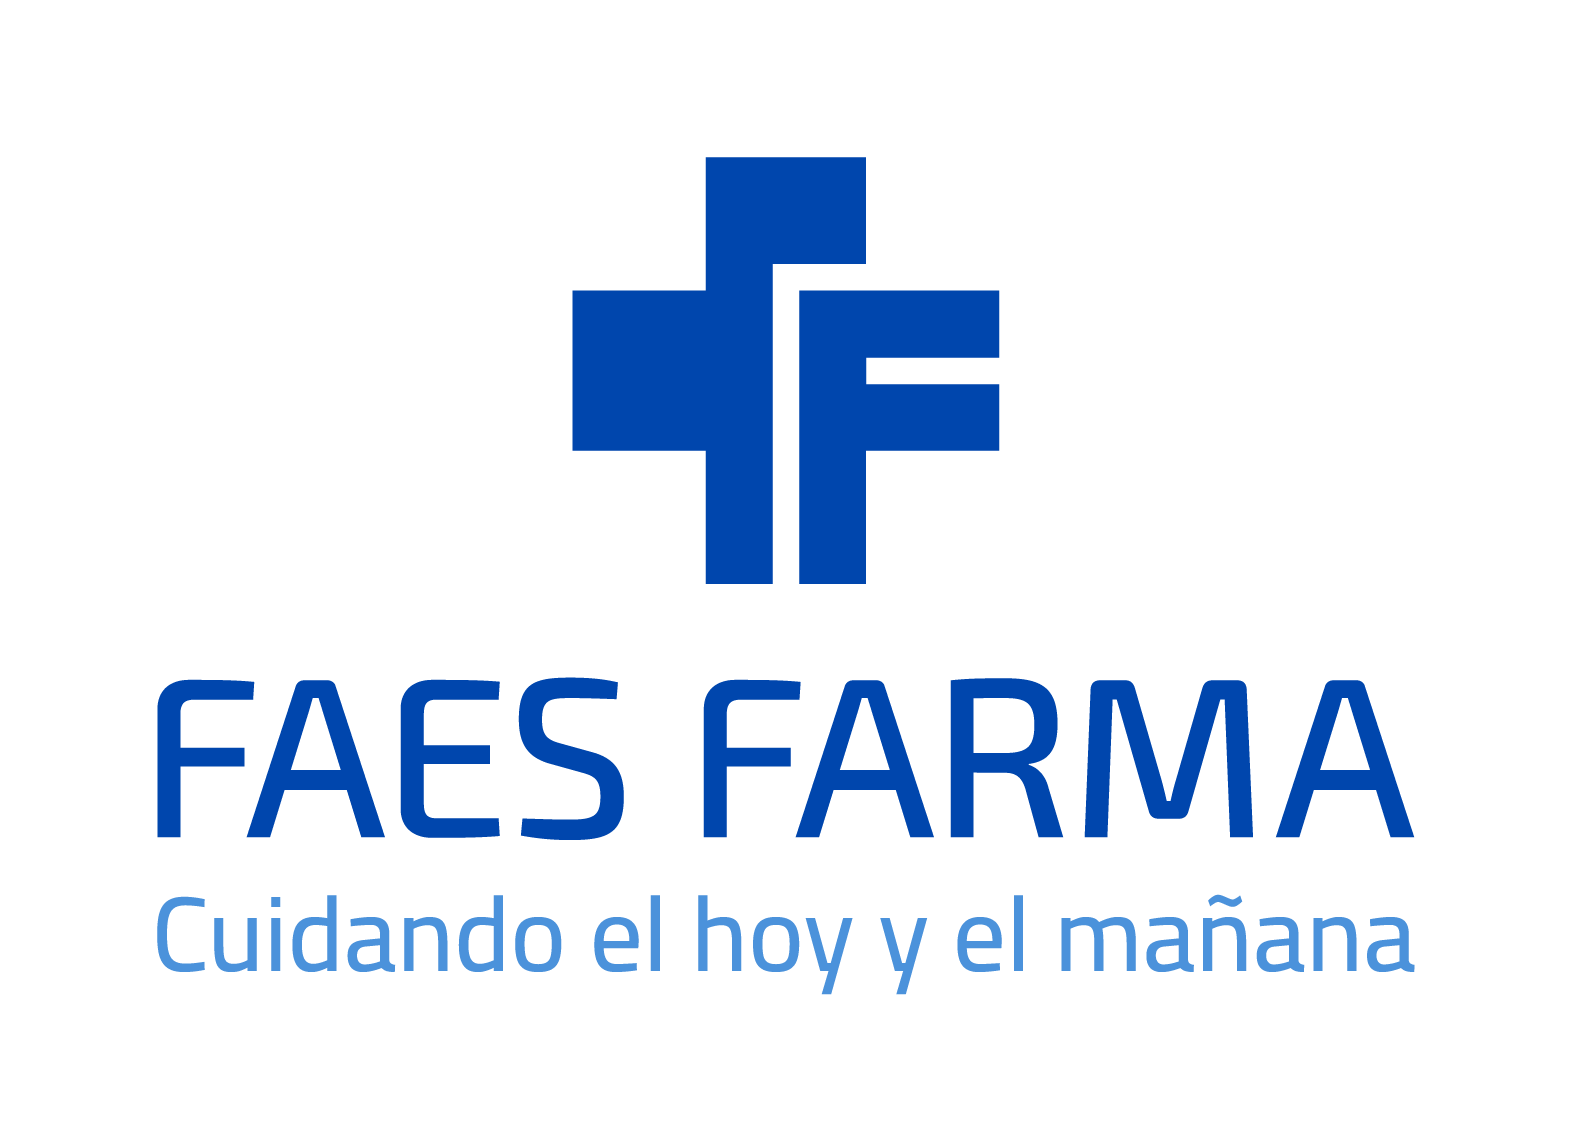 FAES FARMA S.A.